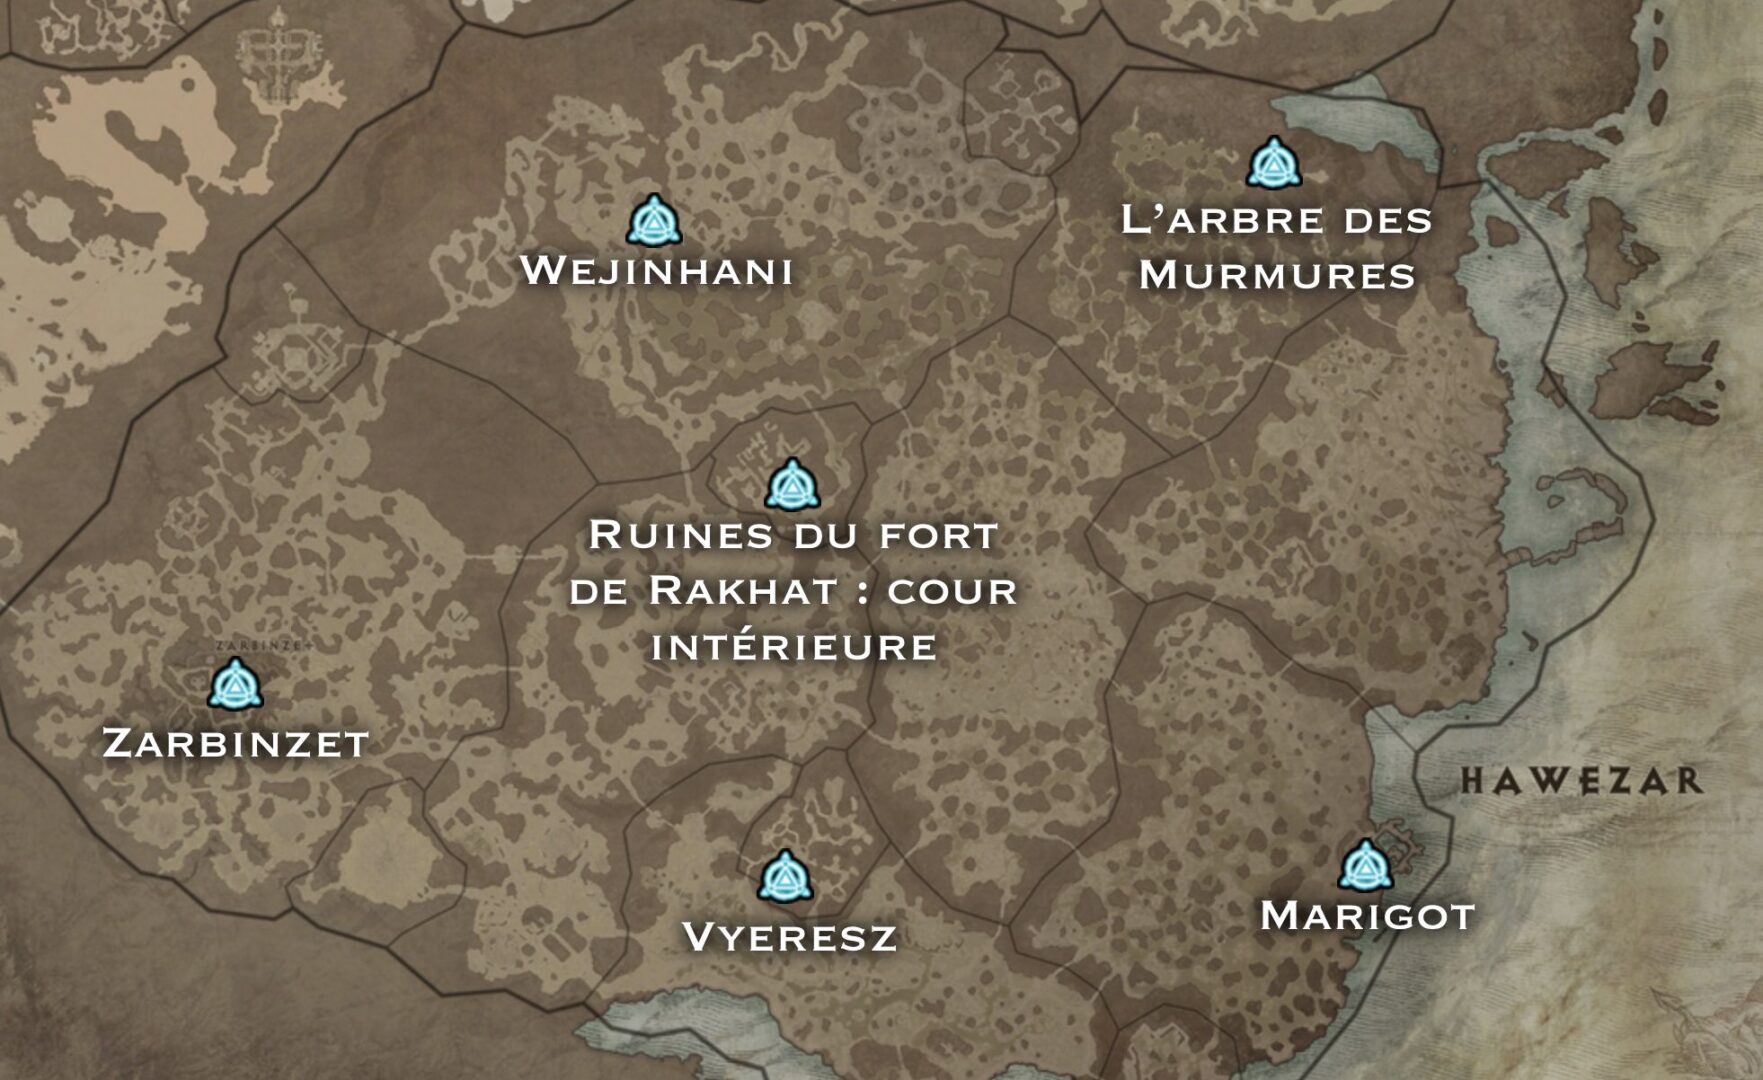 Diablo IV - Guide de zone "Hawezar" : 100% de renommée, Autels de Lilith, Quêtes, Donjons, World Boss...